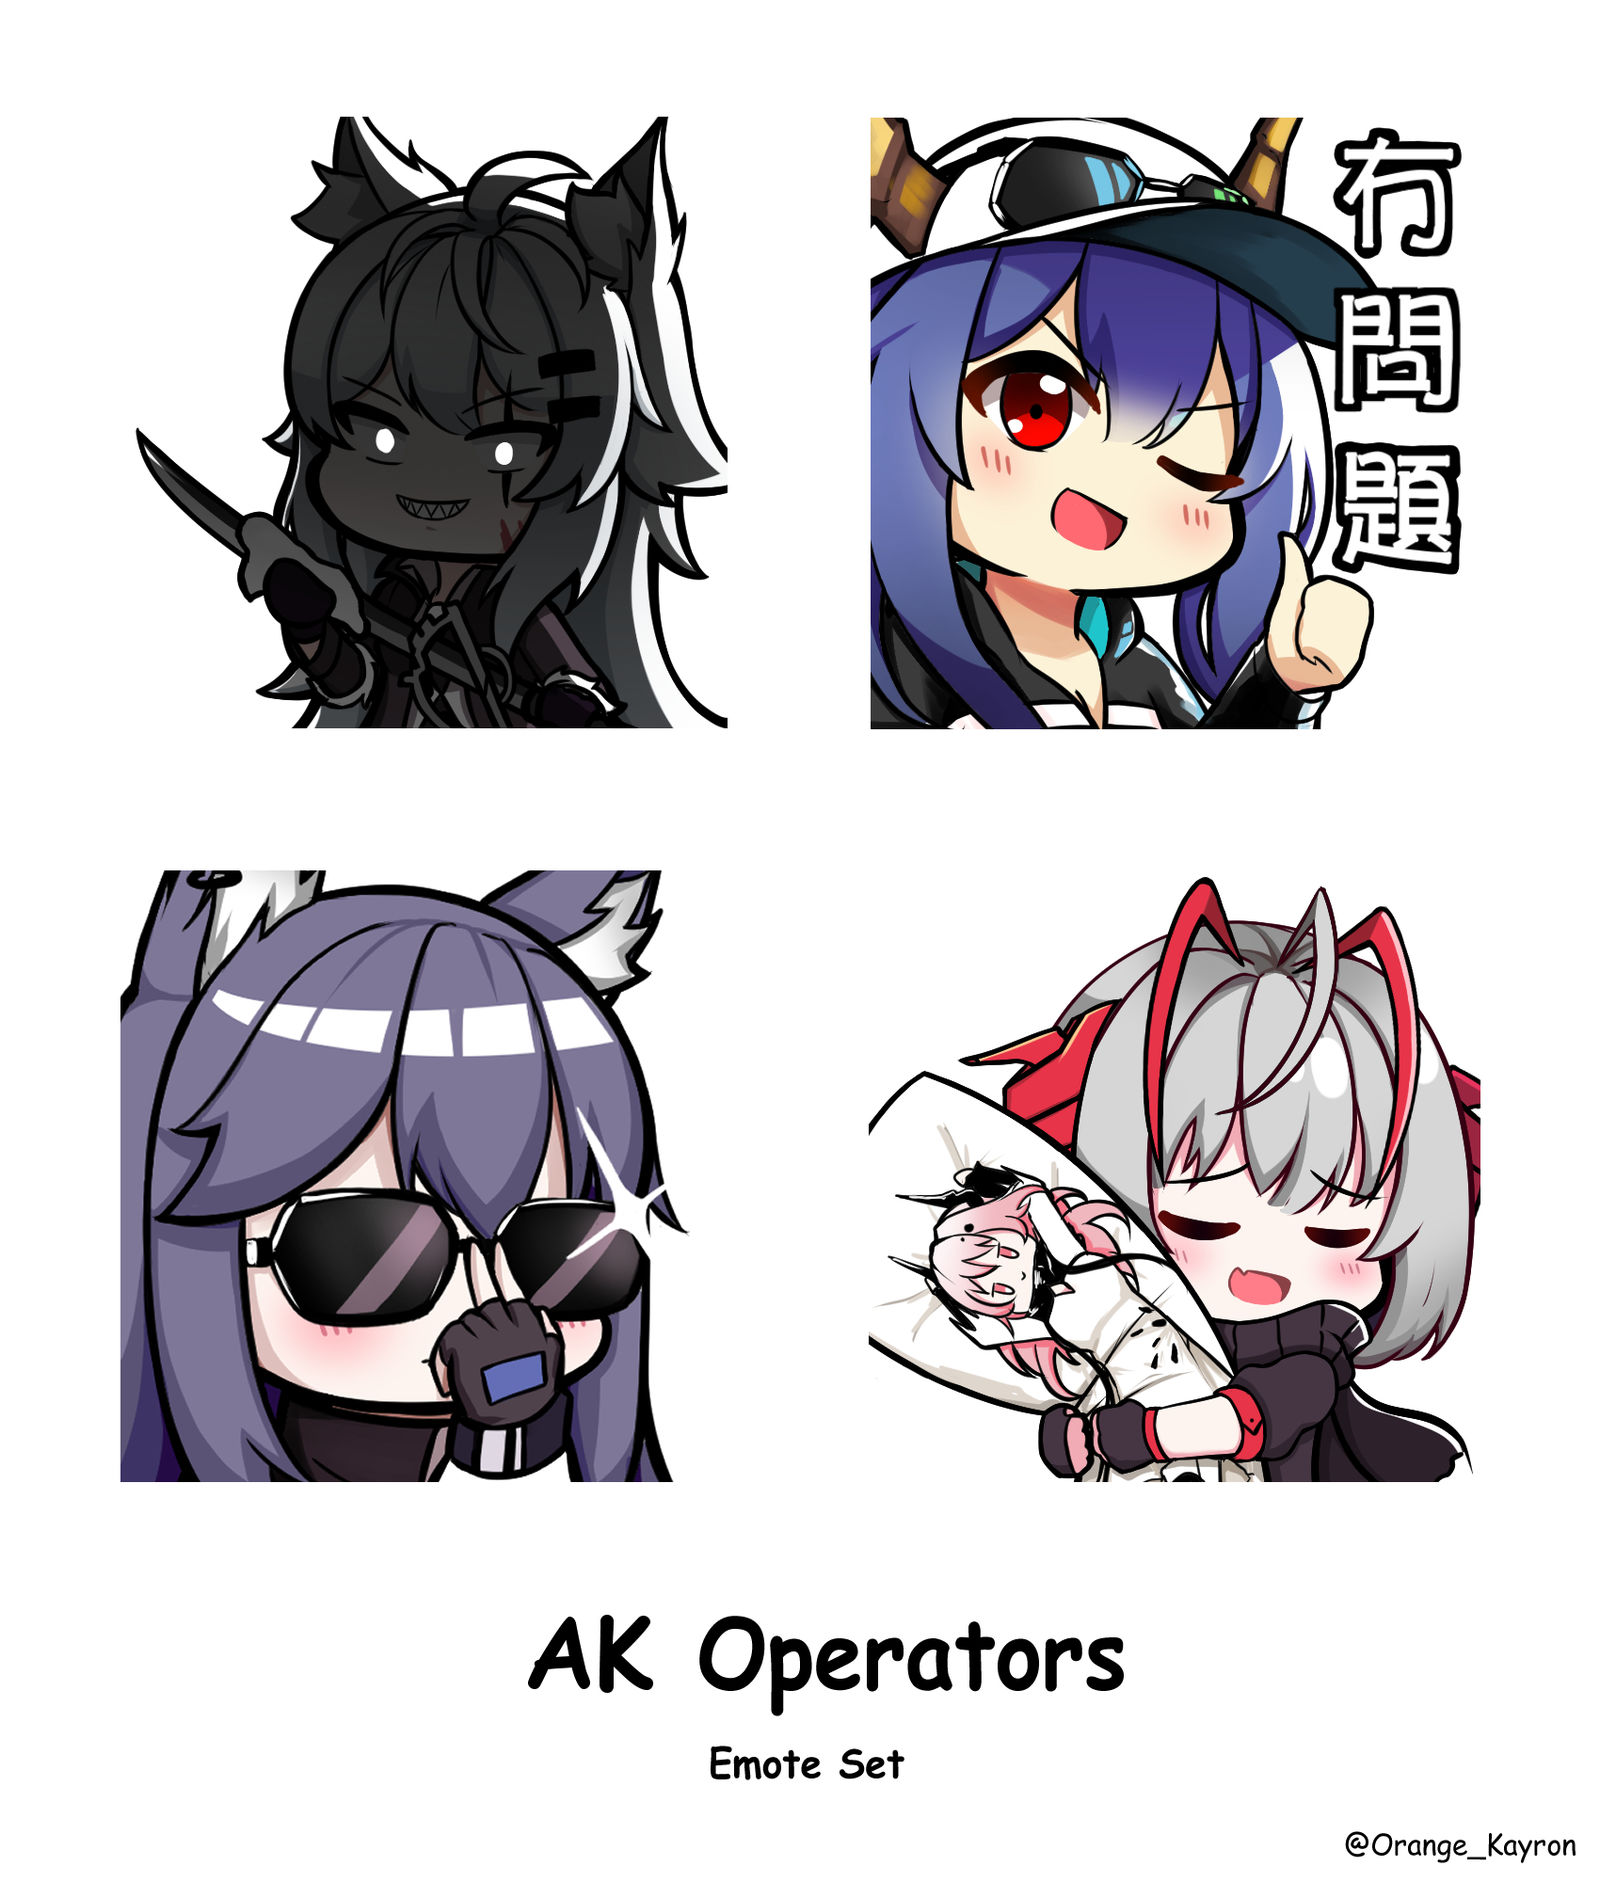 AK Operators Emote set